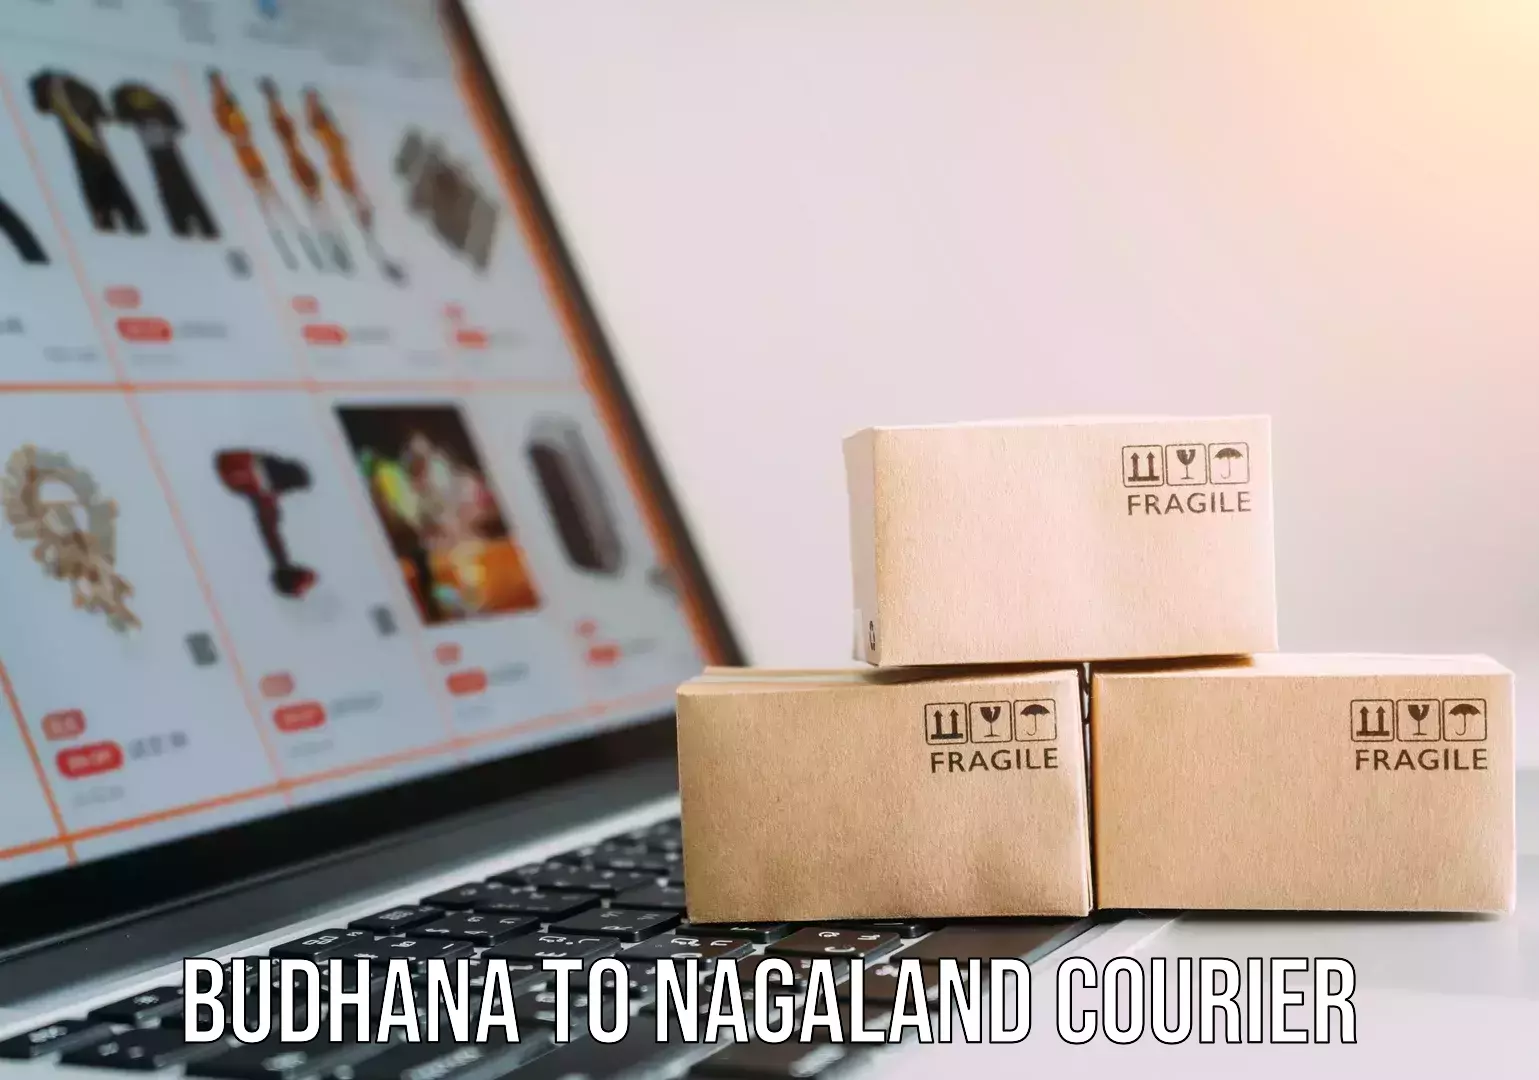 Seamless shipping service Budhana to Nagaland